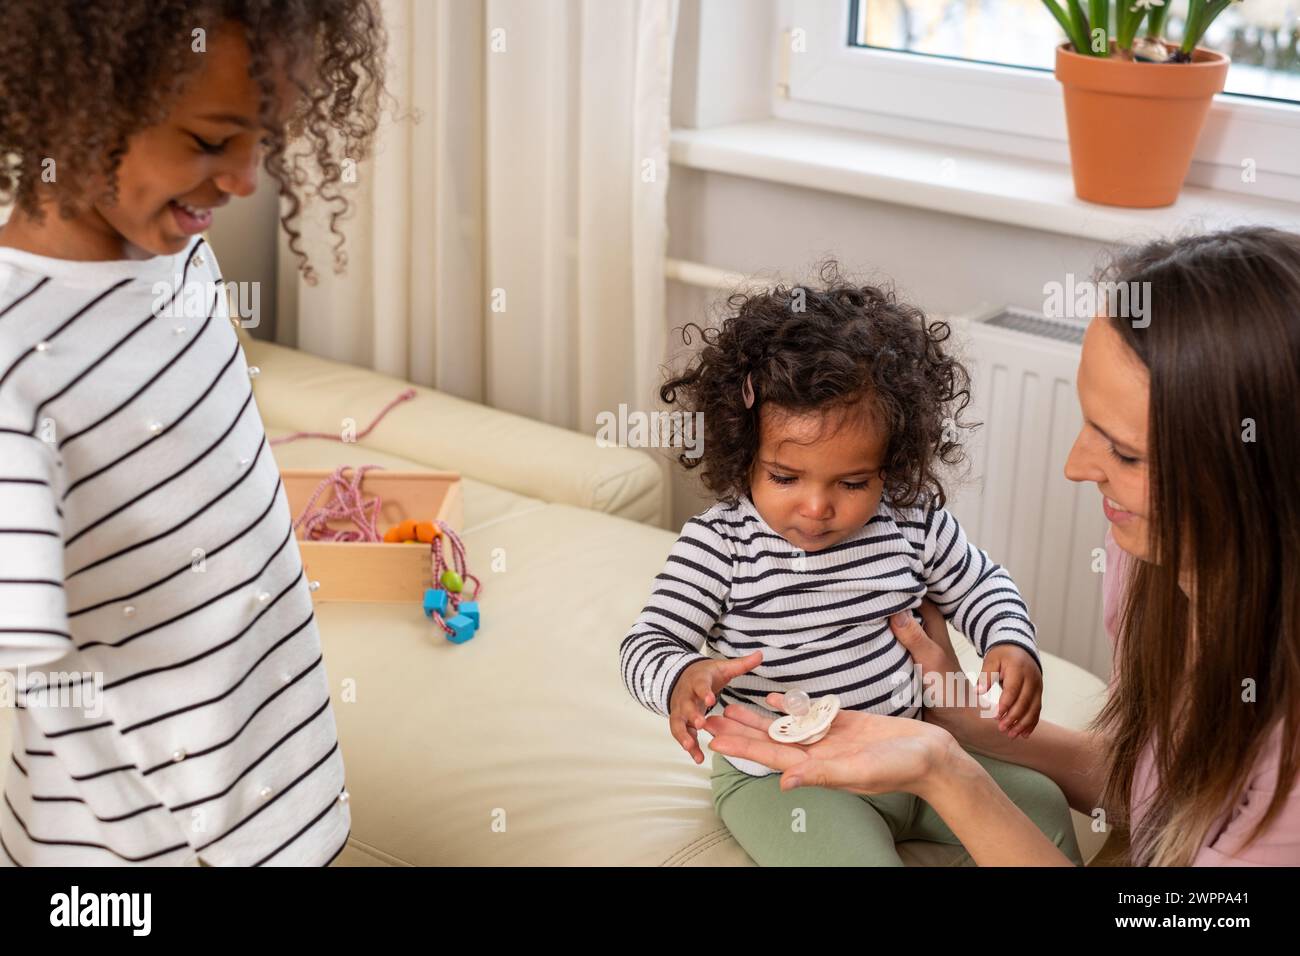 Une mère et ses deux enfants partagent un moment confortable sur un canapé, avec des jouets éparpillés, exsudant la chaleur familiale et les joies de la petite enfance, jouet le Banque D'Images